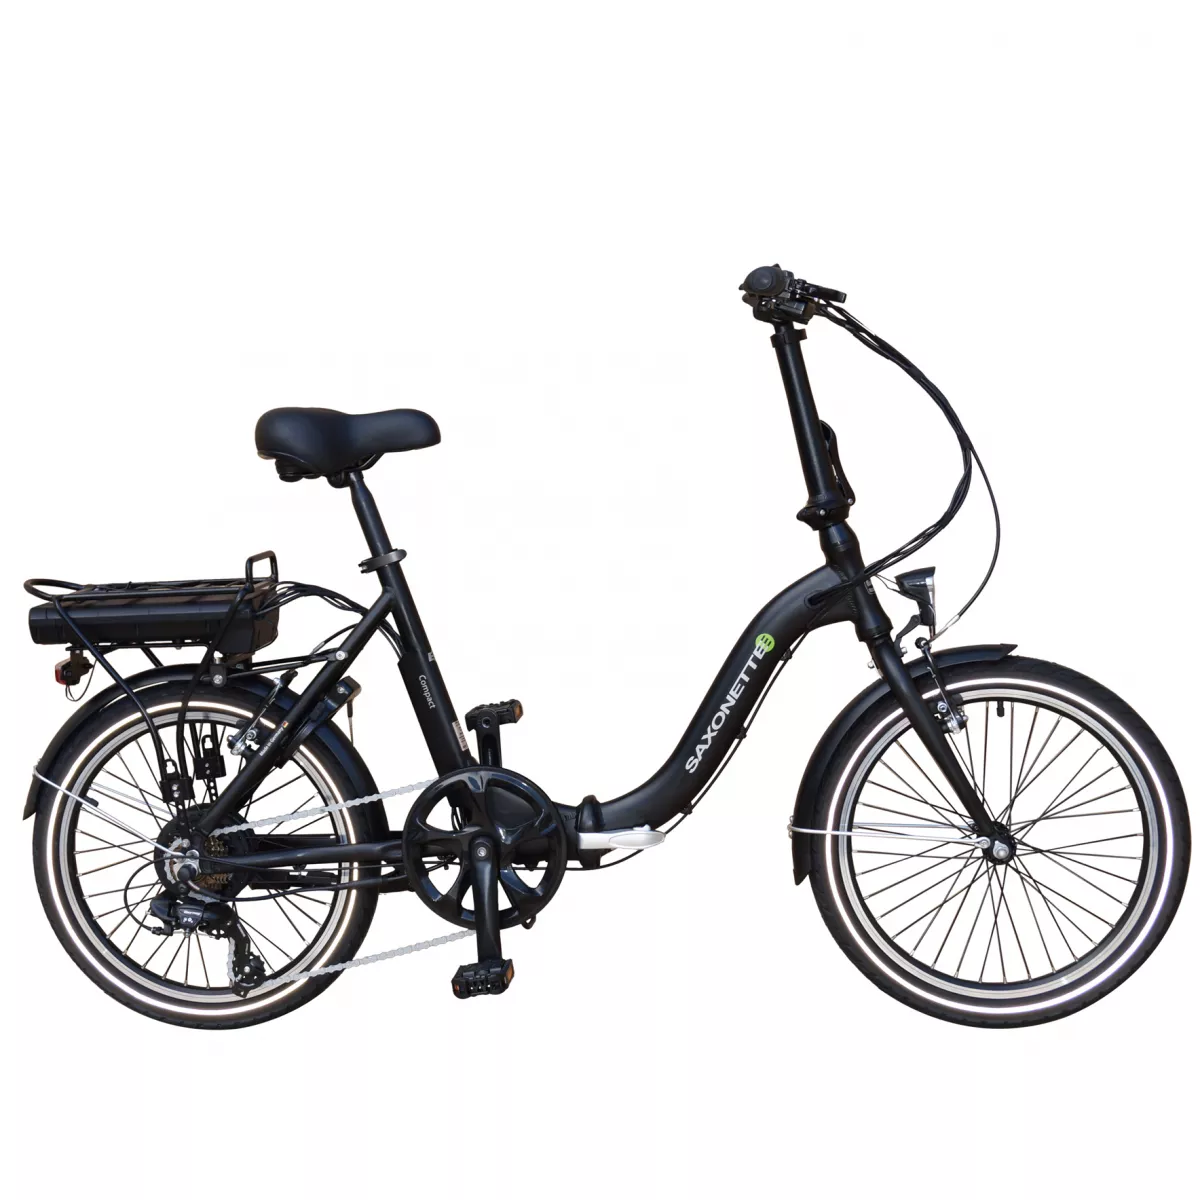 Bicicleta electrica pliabila compact E-BIKE SAXONETTE, roata 20 inch, cadru aluminiu, transmisie SHIMANO 7 viteze, culoare negru